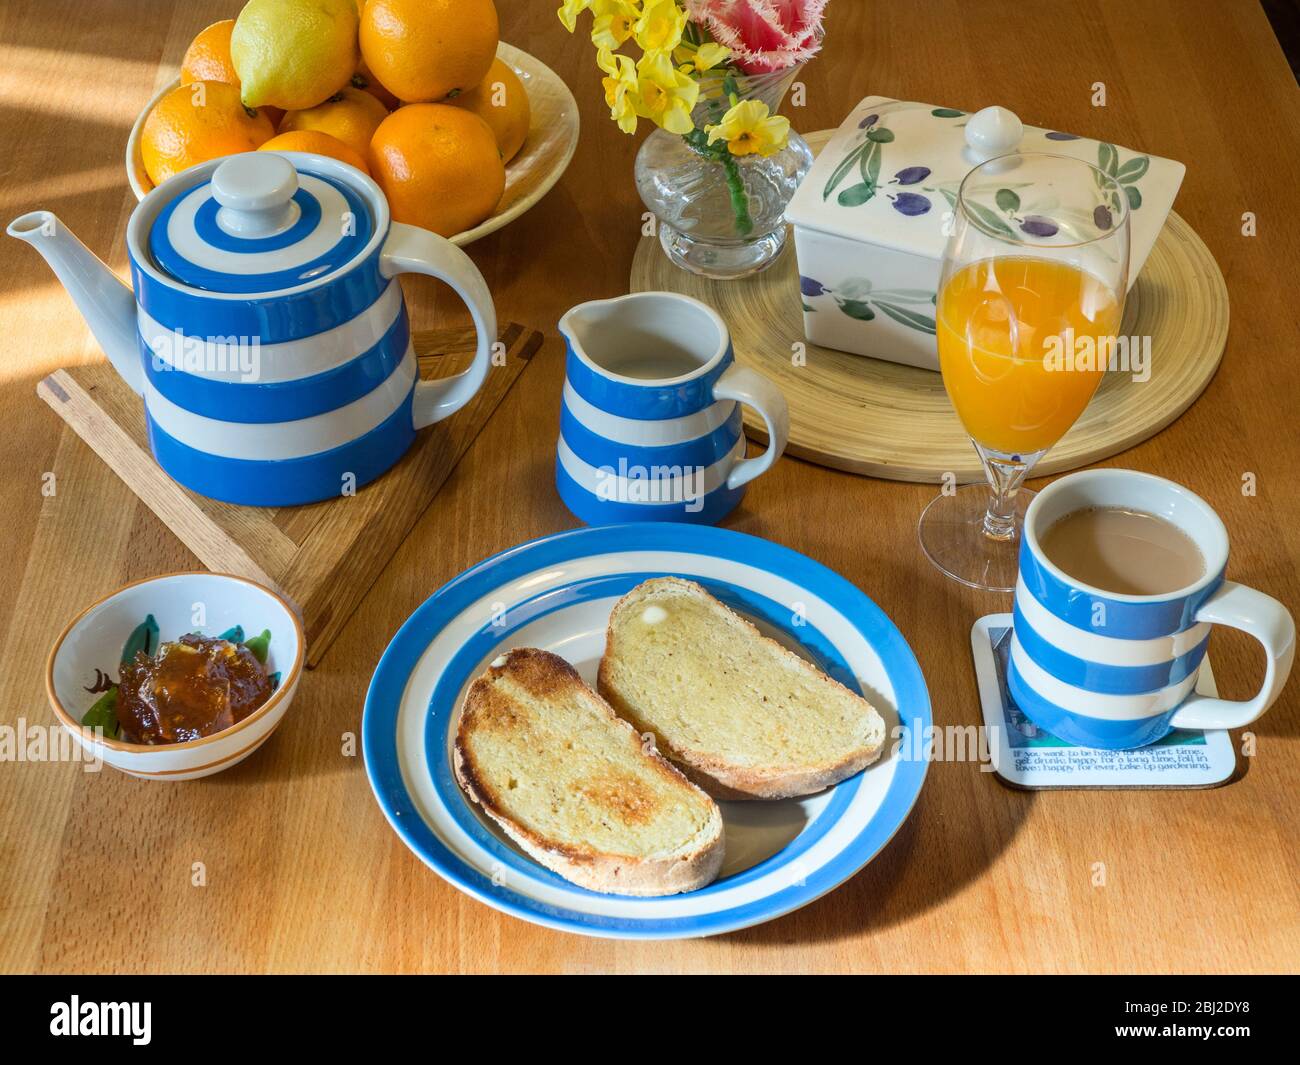 Table de cuisine en bois avec service de cornishware avec pain grillé et une tasse de thé Banque D'Images